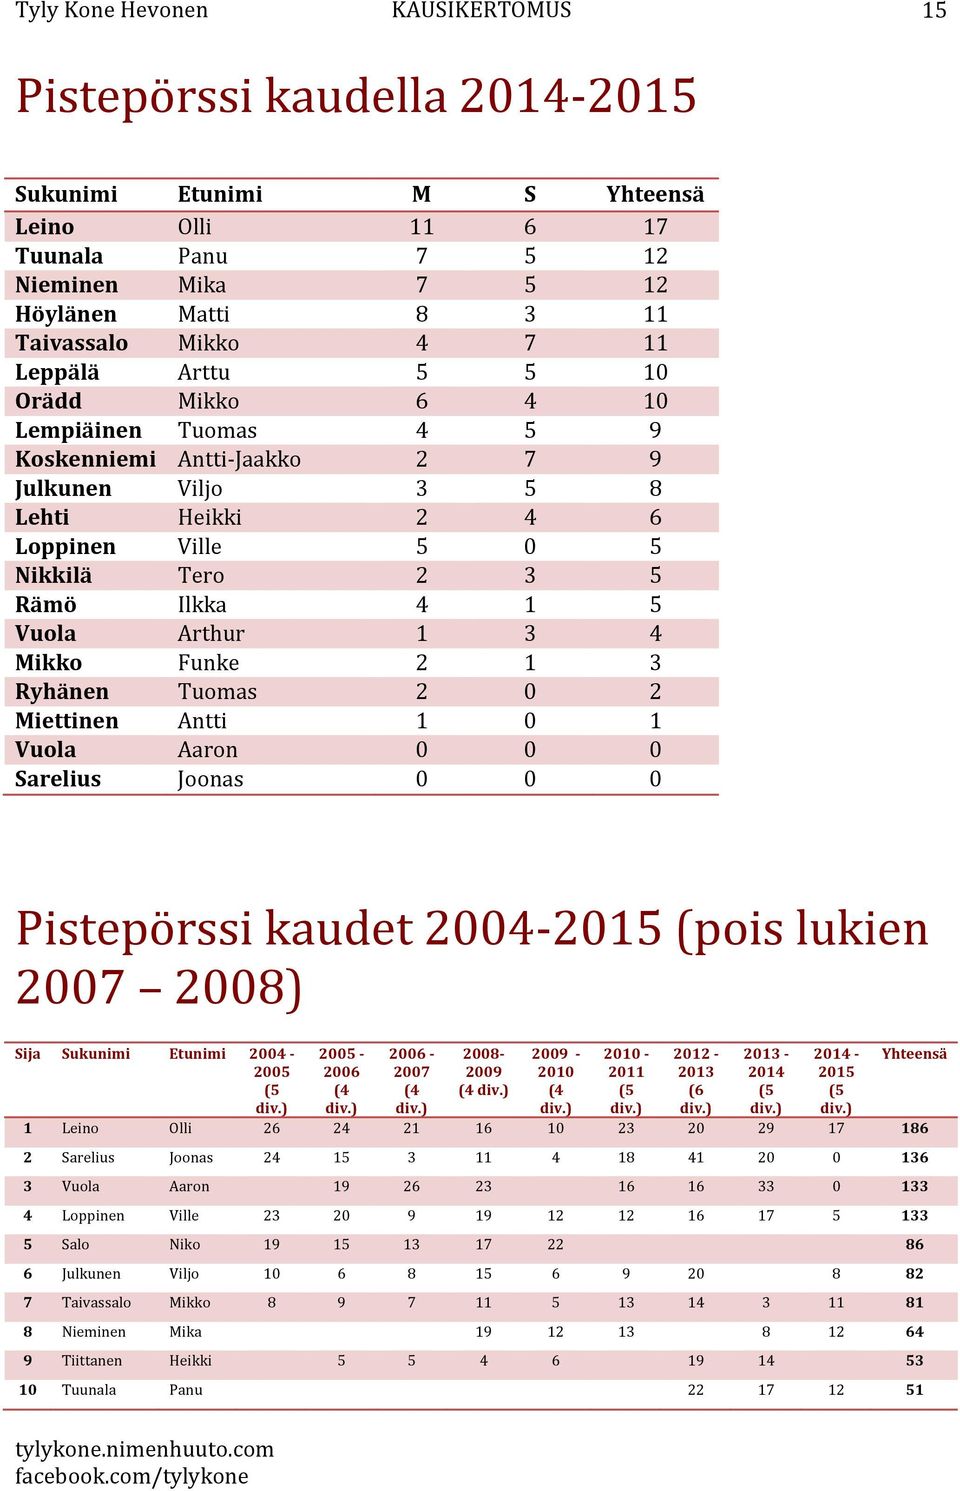 1 3 Ryhänen Tuomas 2 0 2 Miettinen Antti 1 0 1 Vuola Aaron 0 0 0 Sarelius Joonas 0 0 0 Pistepörssi kaudet 2004-2015 (pois lukien 2007 2008) Sija Sukunimi Etunimi 2004-2005 (5 div.) 2005-2006 (4 div.